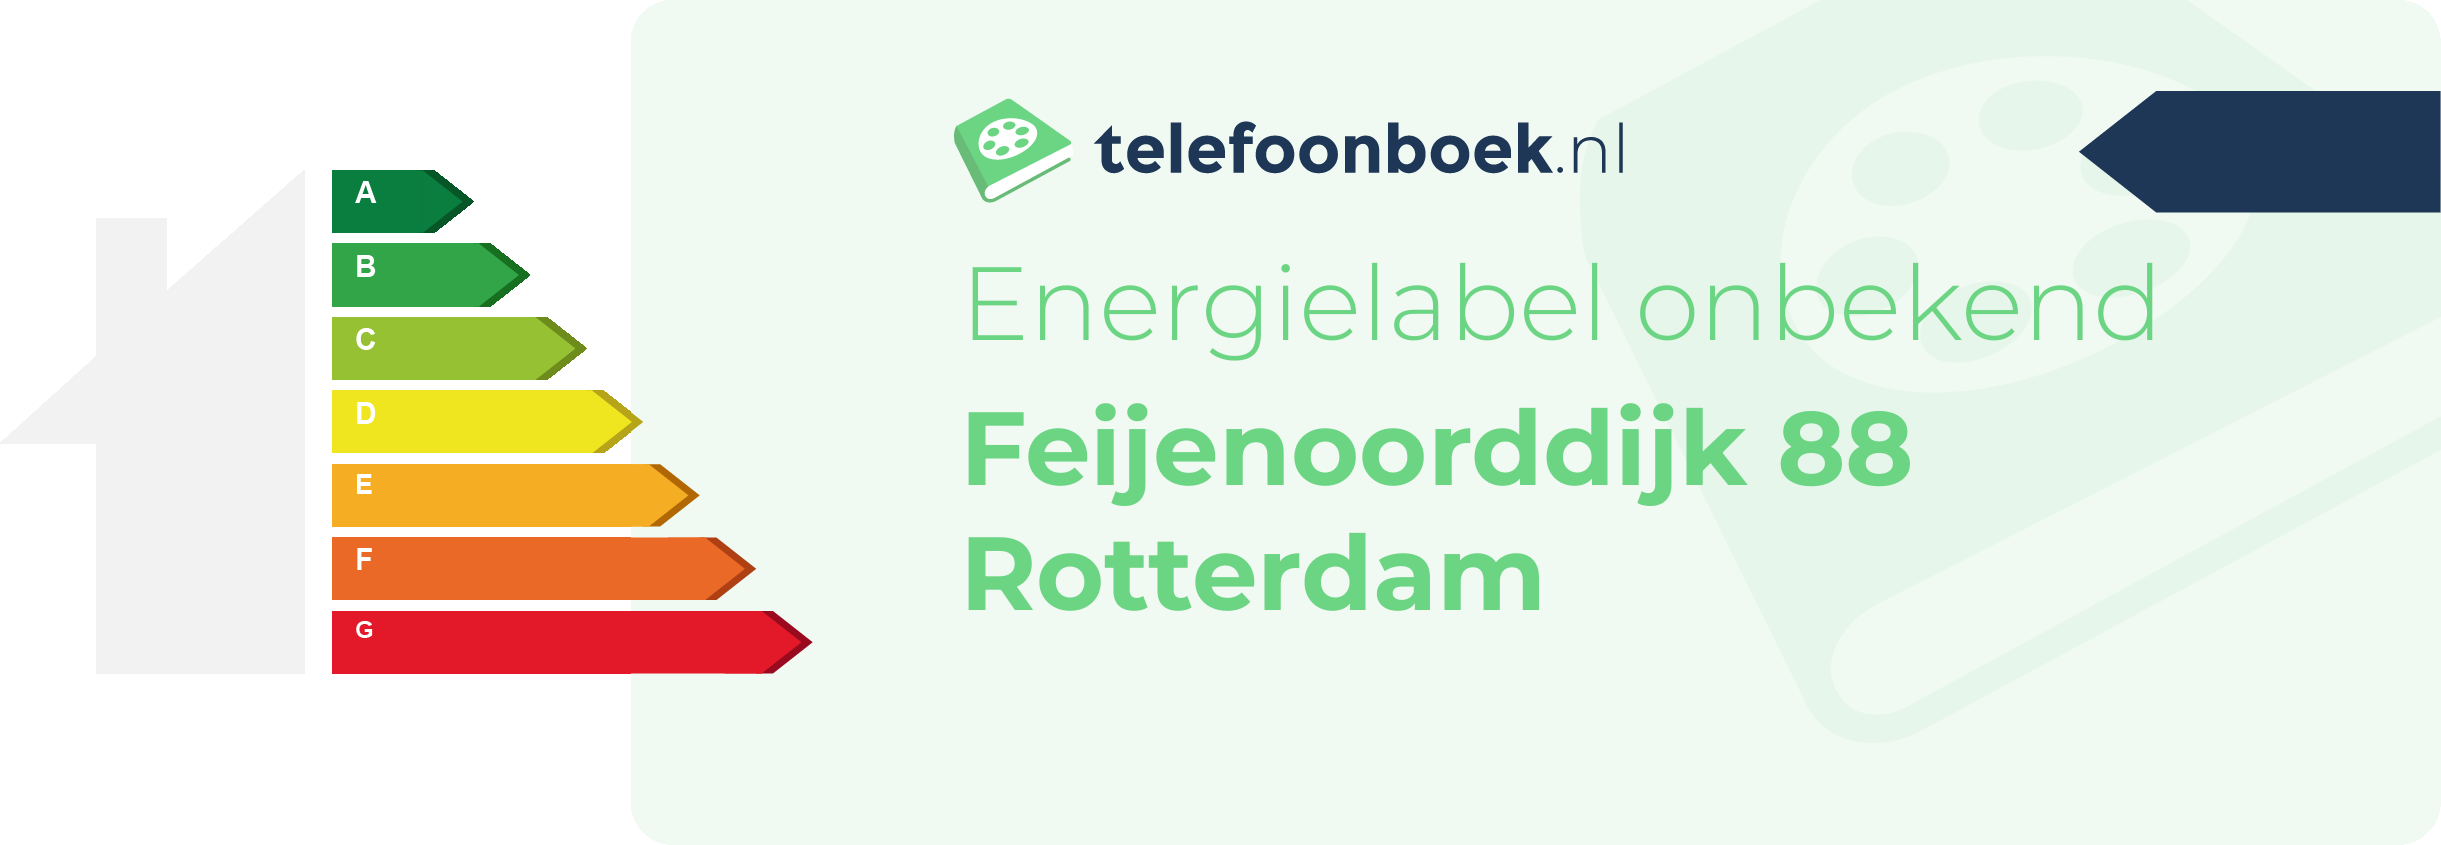 Energielabel Feijenoorddijk 88 Rotterdam